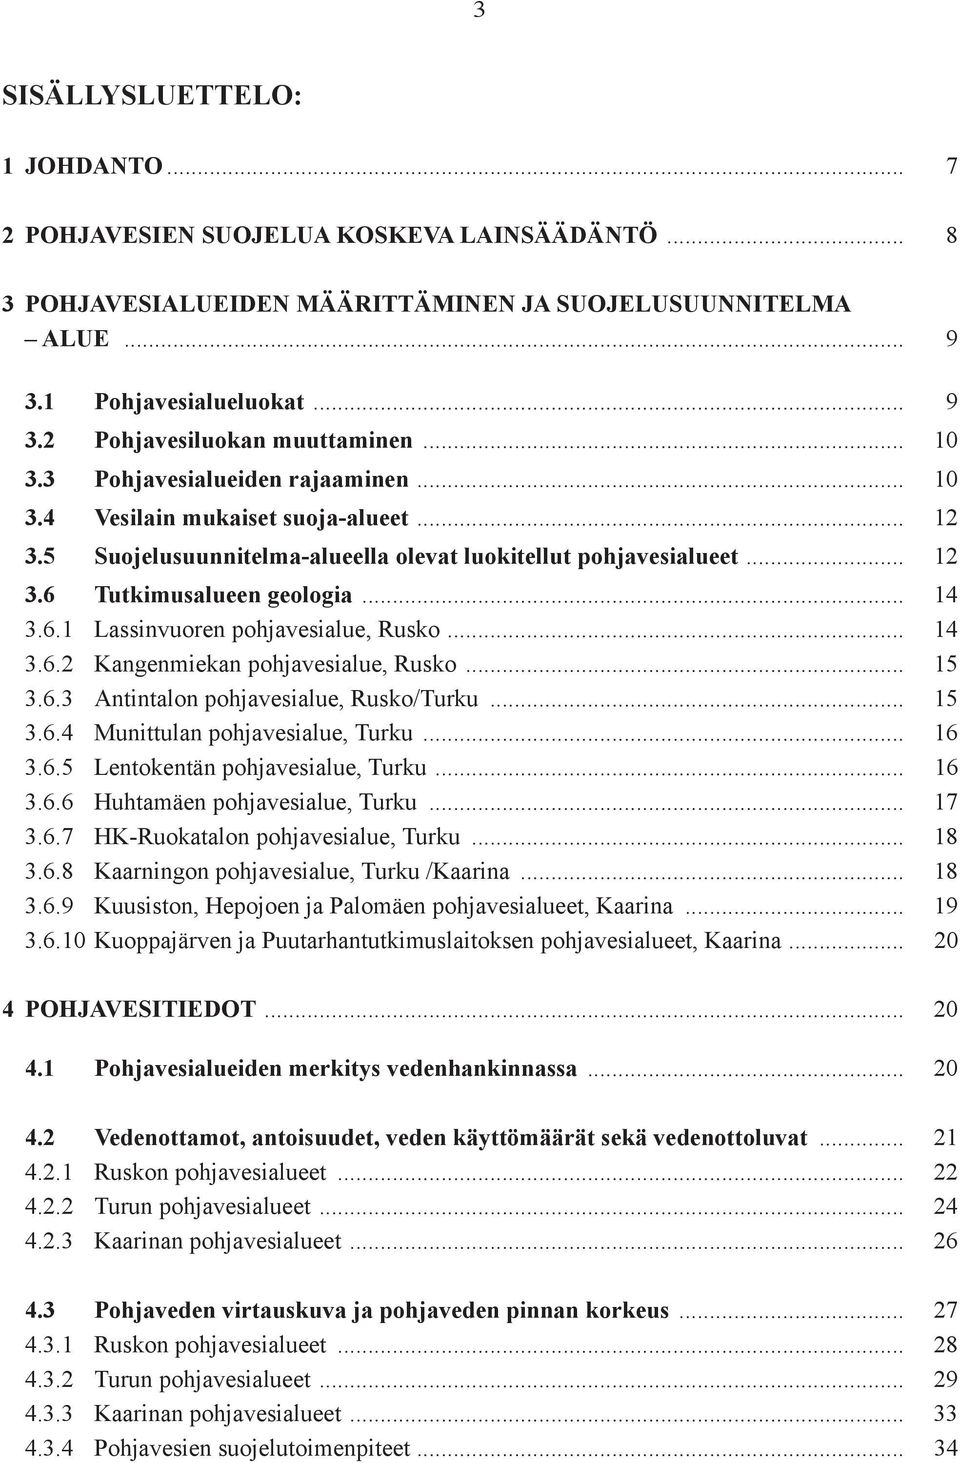 .. 14 3.6.2 Kangenmiekan pohjavesialue, Rusko... 15 3.6.3 Antintalon pohjavesialue, Rusko/Turku... 15 3.6.4 Munittulan pohjavesialue, Turku... 16 3.6.5 Lentokentän pohjavesialue, Turku... 16 3.6.6 Huhtamäen pohjavesialue, Turku.